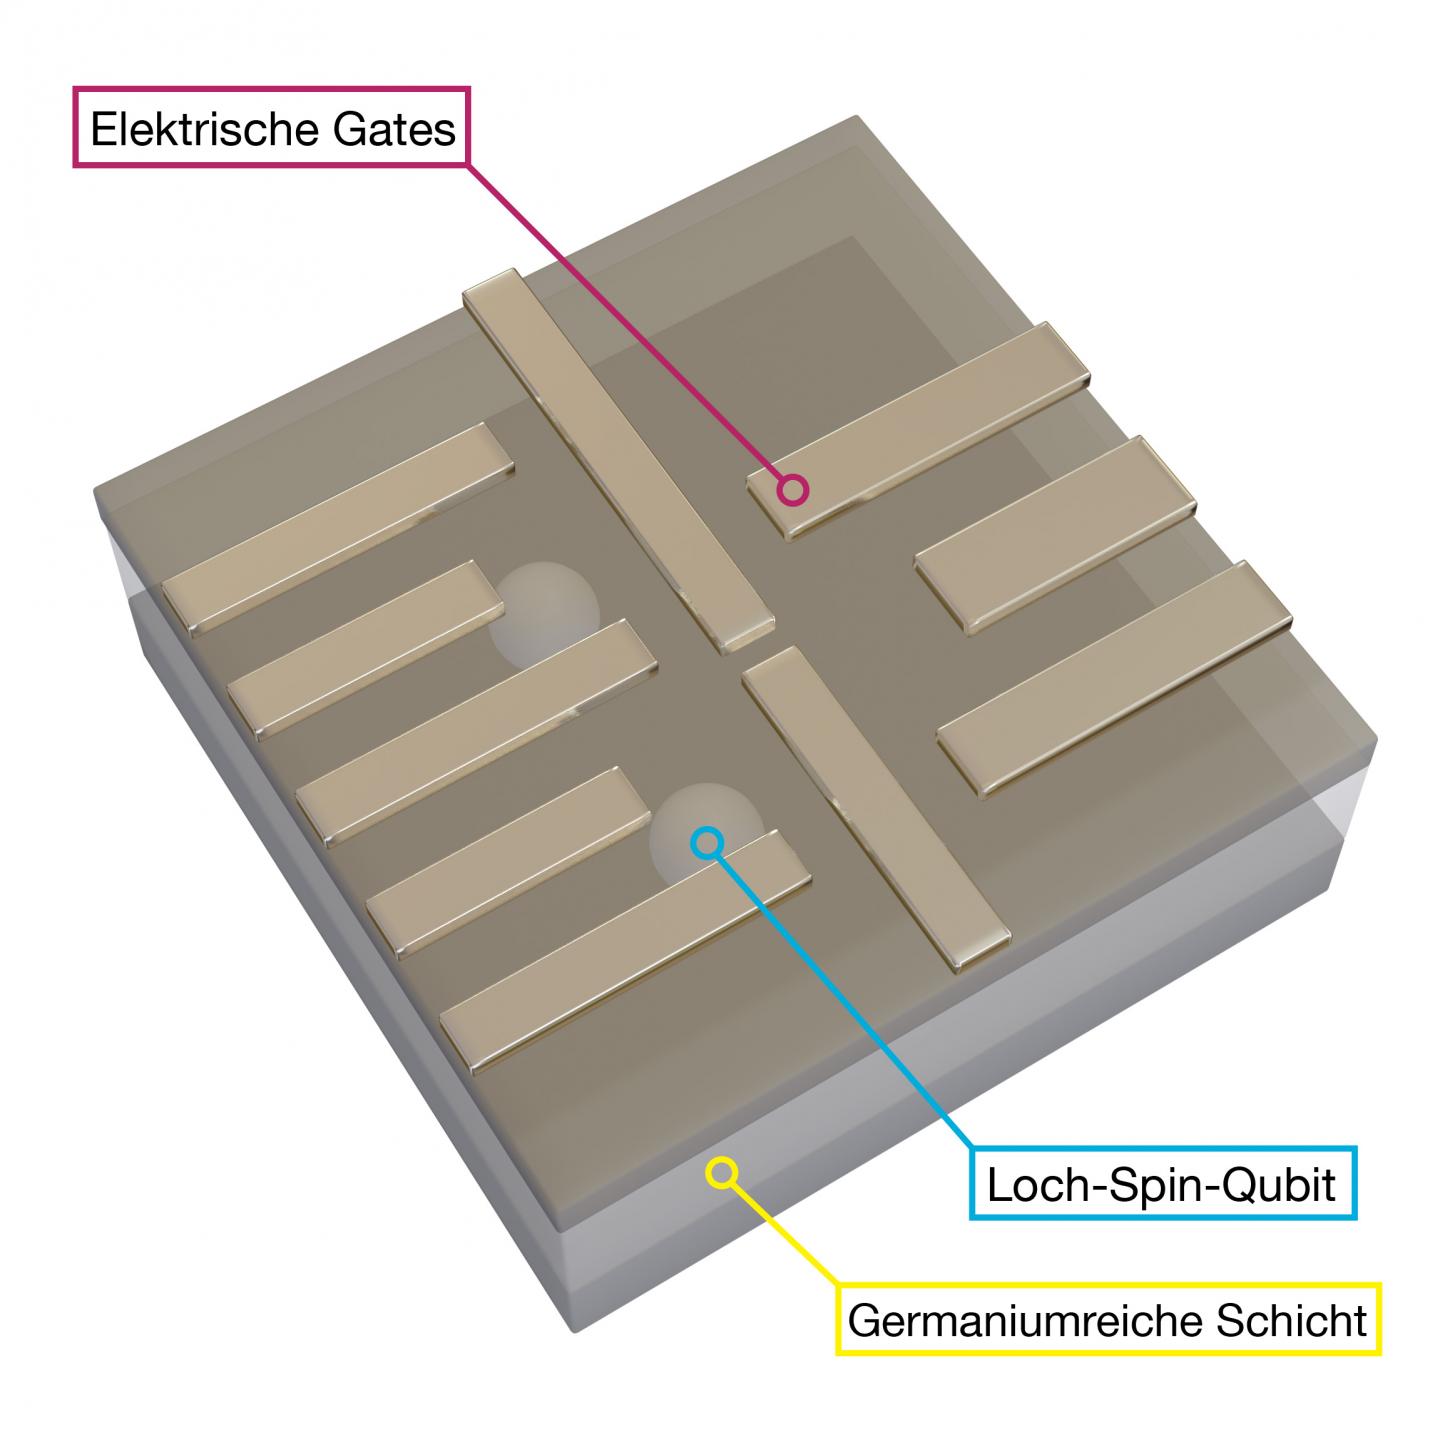 Loch-Spin-Qubits in germaniumreicher Schicht